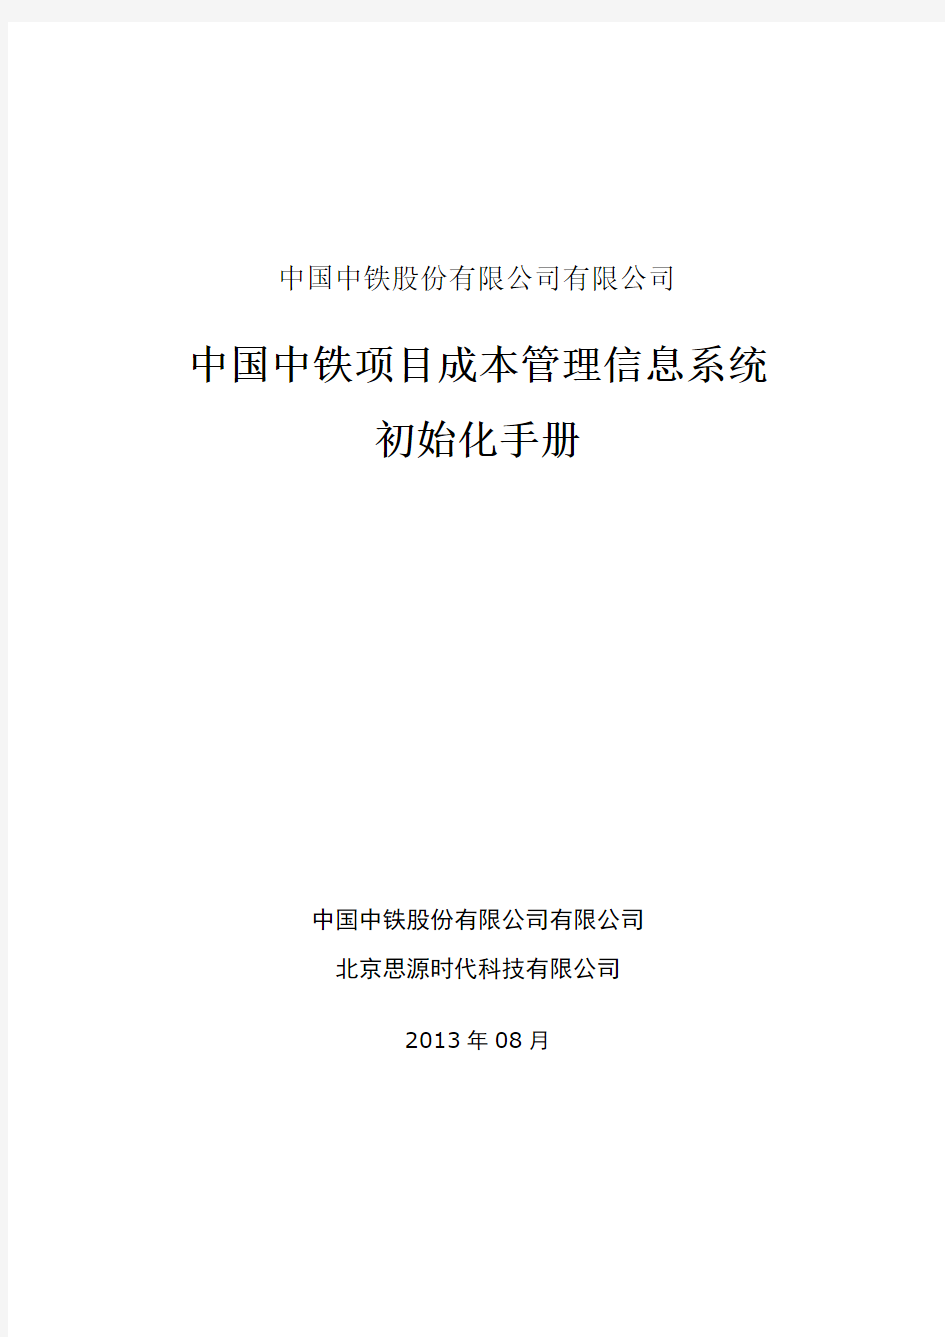 (完整版)3.中国中铁项目成本管理信息系统-初始手册